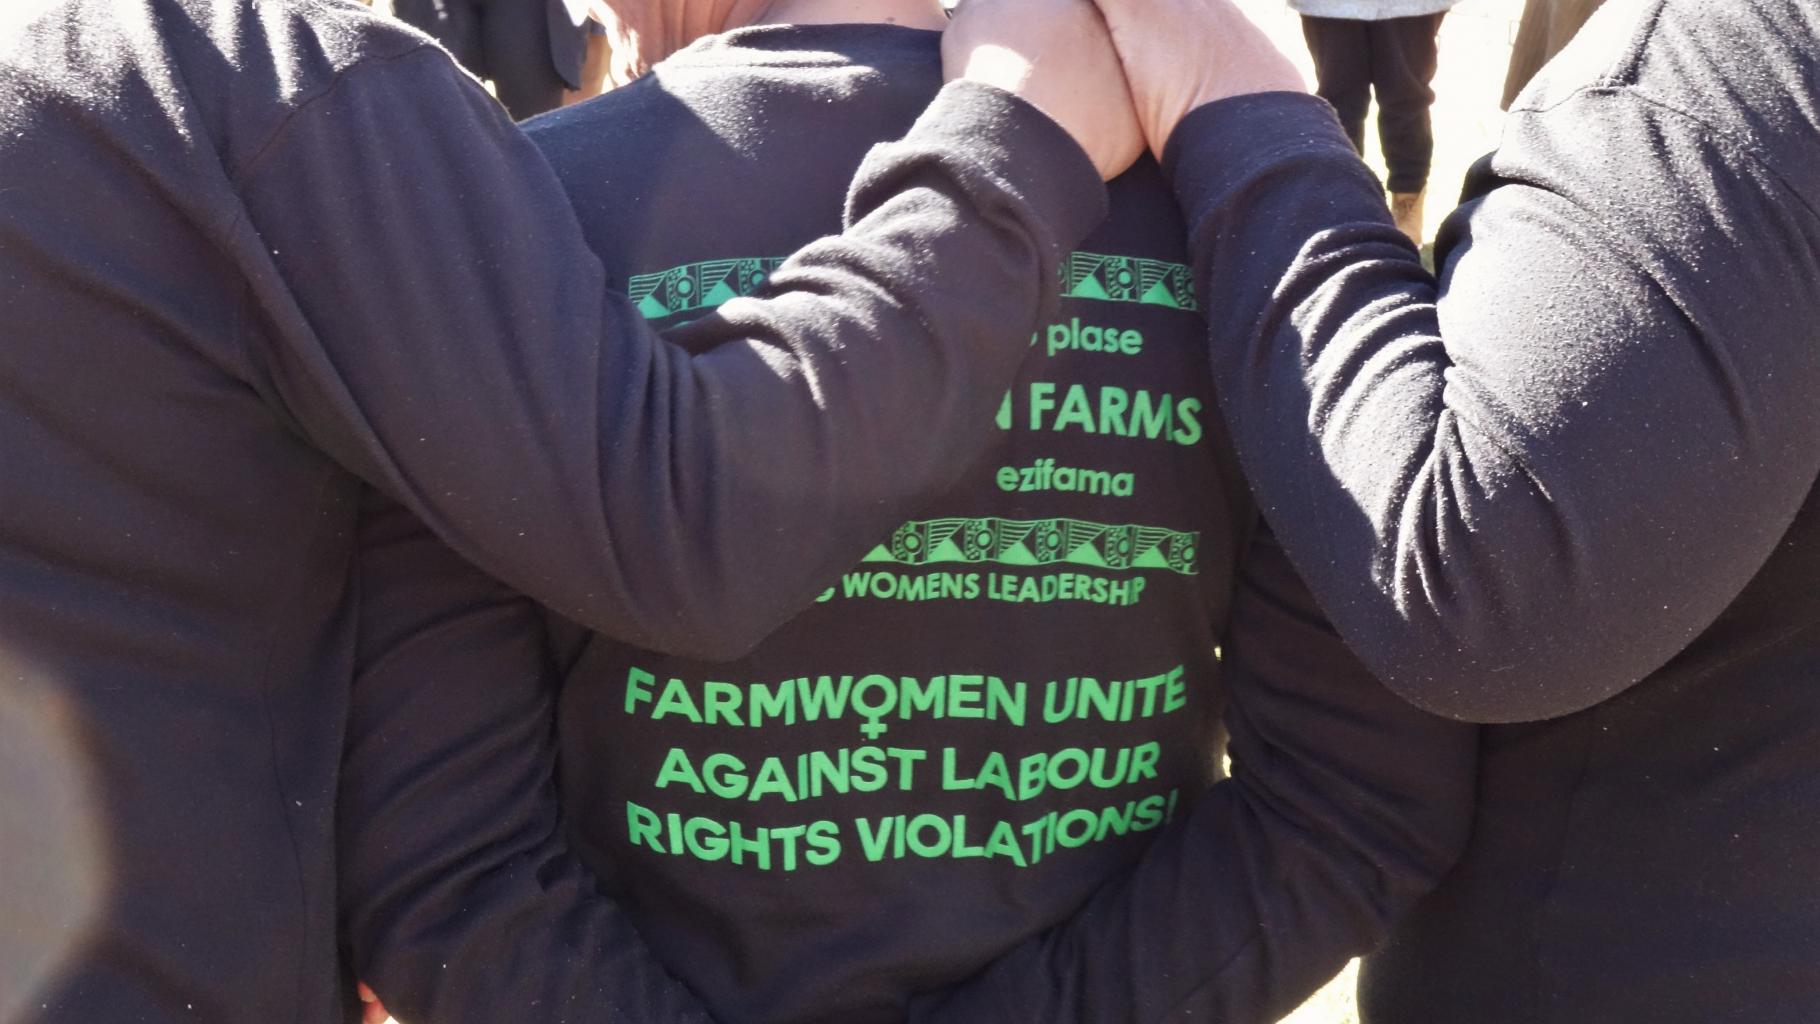 Drei Frauen stehen Arm in Arm mit dem Rücken zu uns, auf ihren T-Shirts steht "Farmwomen unite against labour rights violations" 